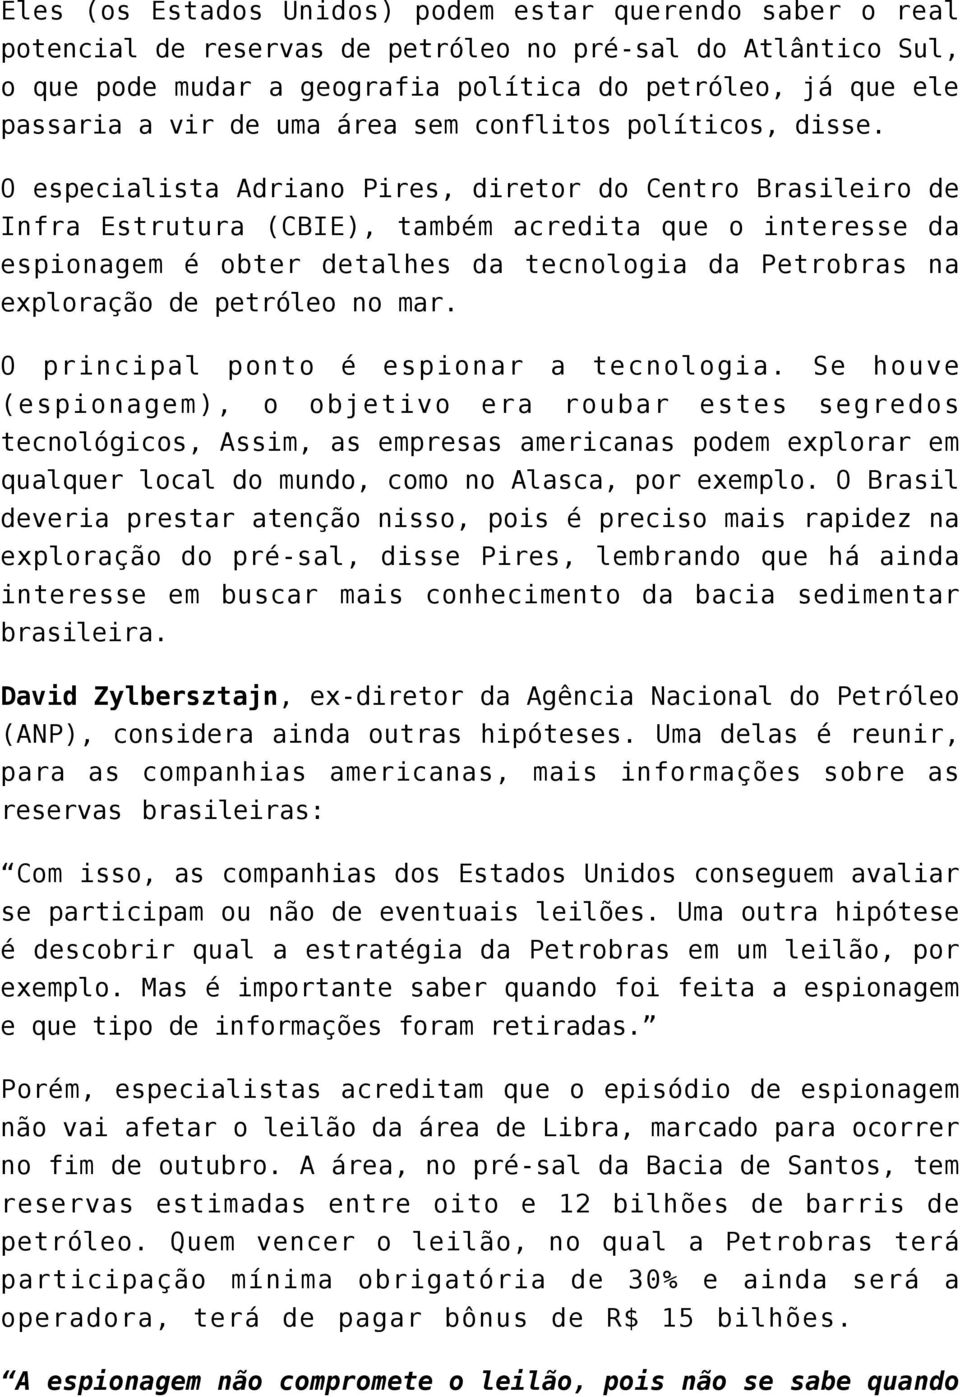 O especialista Adriano Pires, diretor do Centro Brasileiro de Infra Estrutura (CBIE), também acredita que o interesse da espionagem é obter detalhes da tecnologia da Petrobras na exploração de